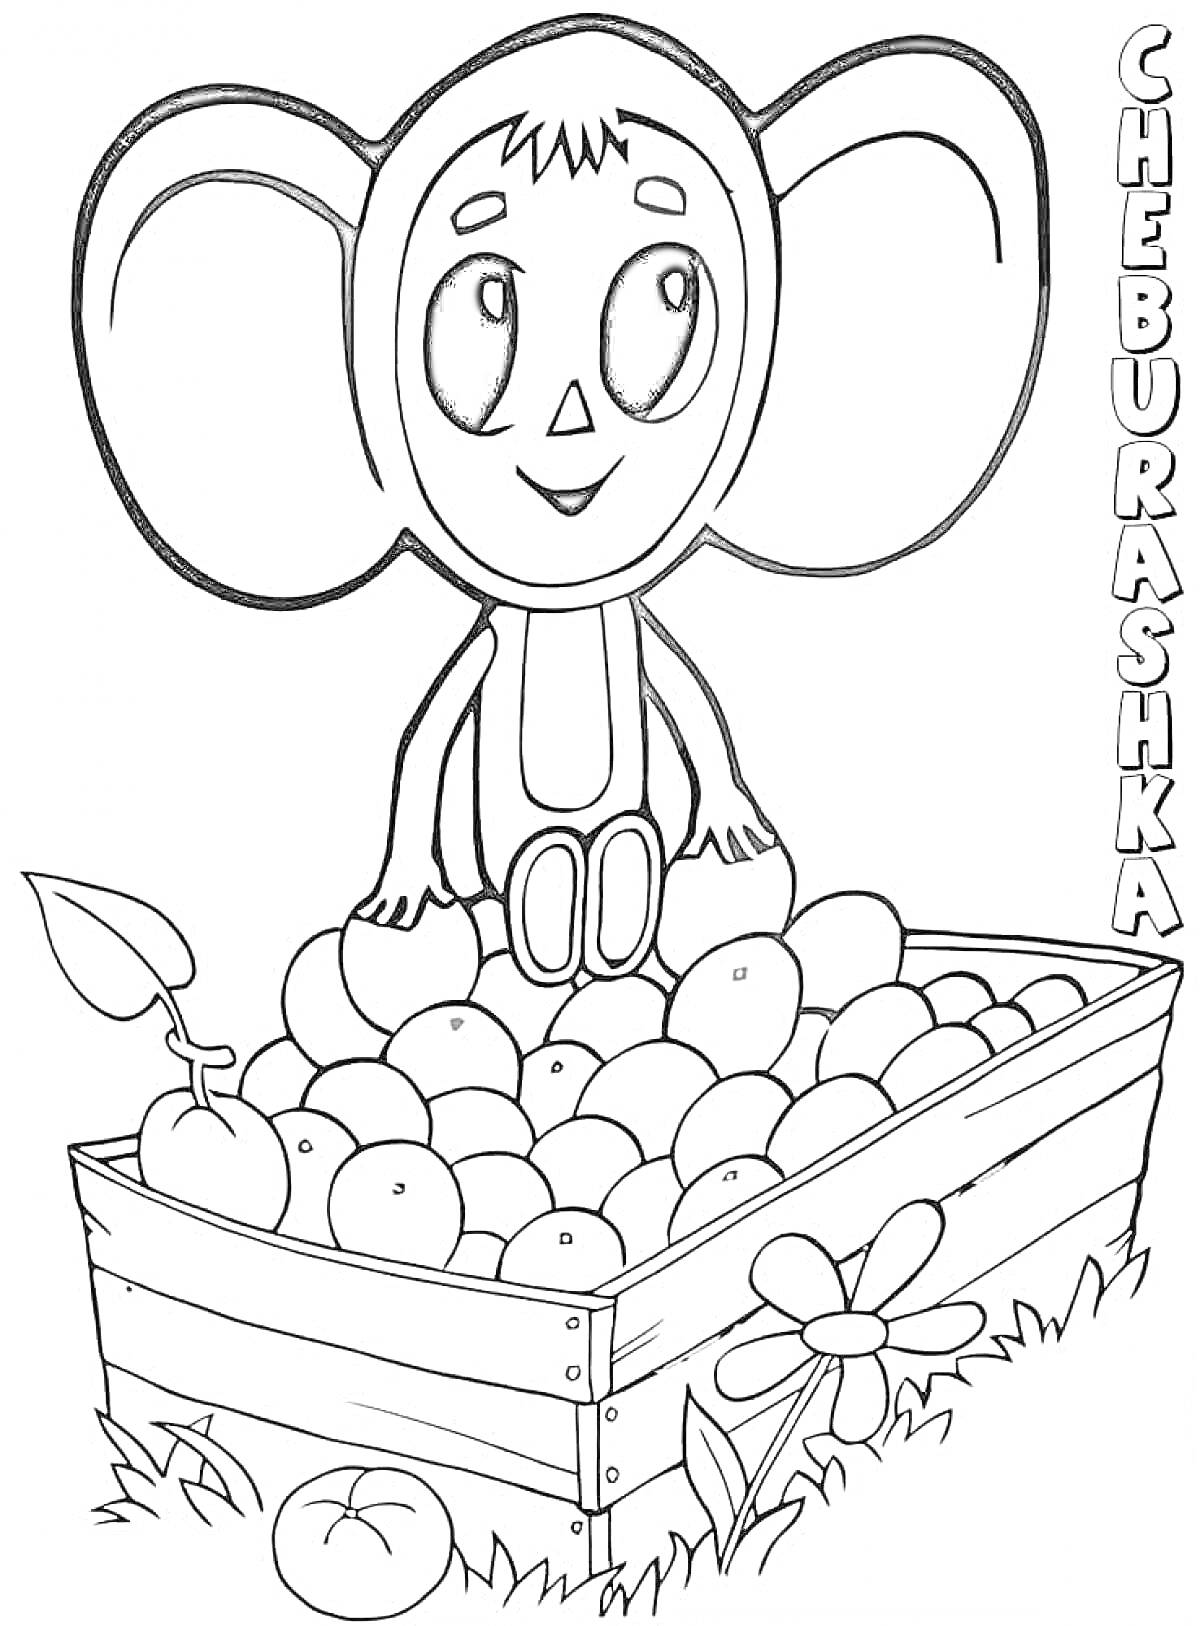 Раскраска Чебурашка сидит на ящике с фруктами, цветок, трава, яблоко